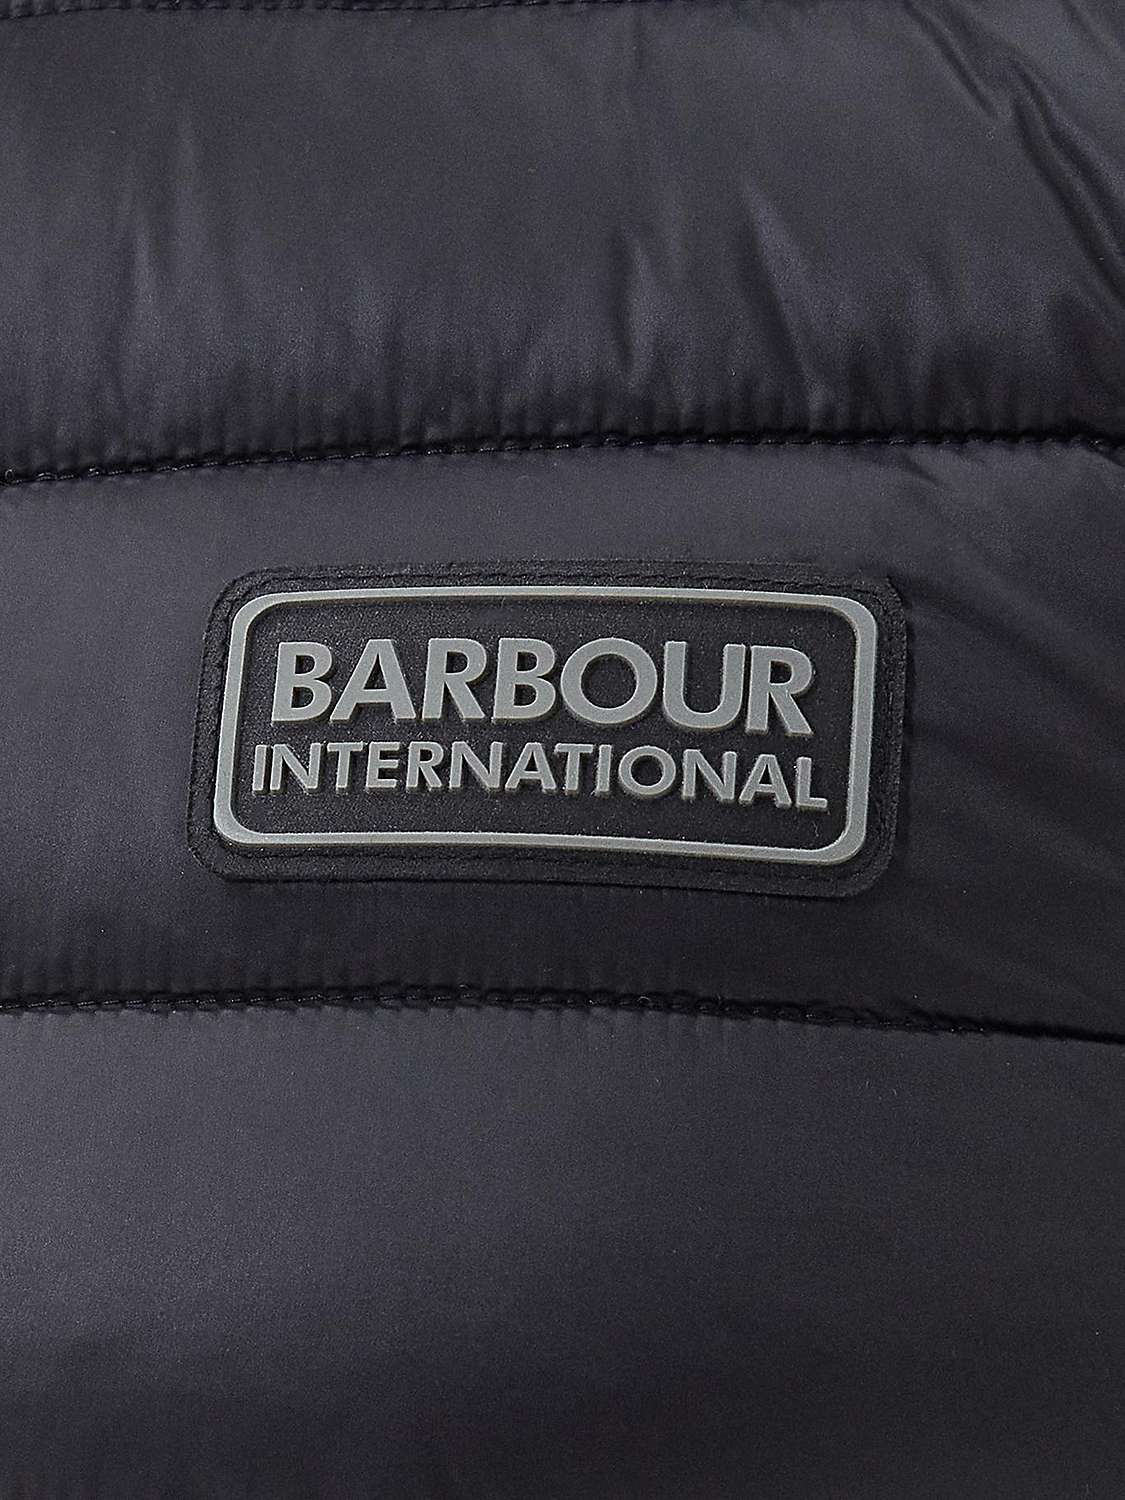 Buy Barbour International Tourer Reed Gilet Online at johnlewis.com